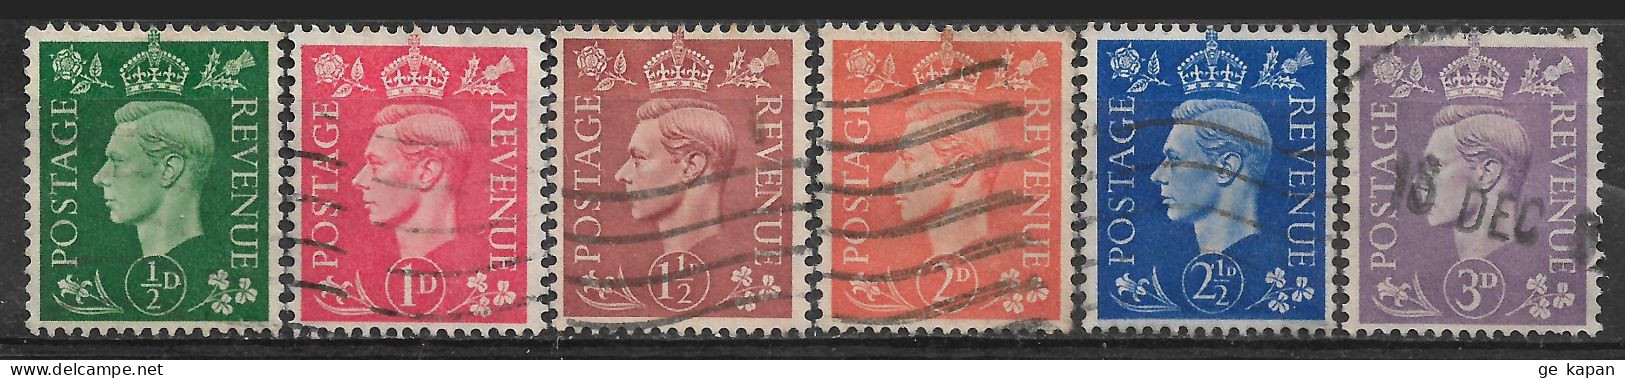 1941-1942 GREAT BRITAIN Complete Set Of 6 Used Stamps (Scott # 258-263) CV $3.30 - Gebruikt